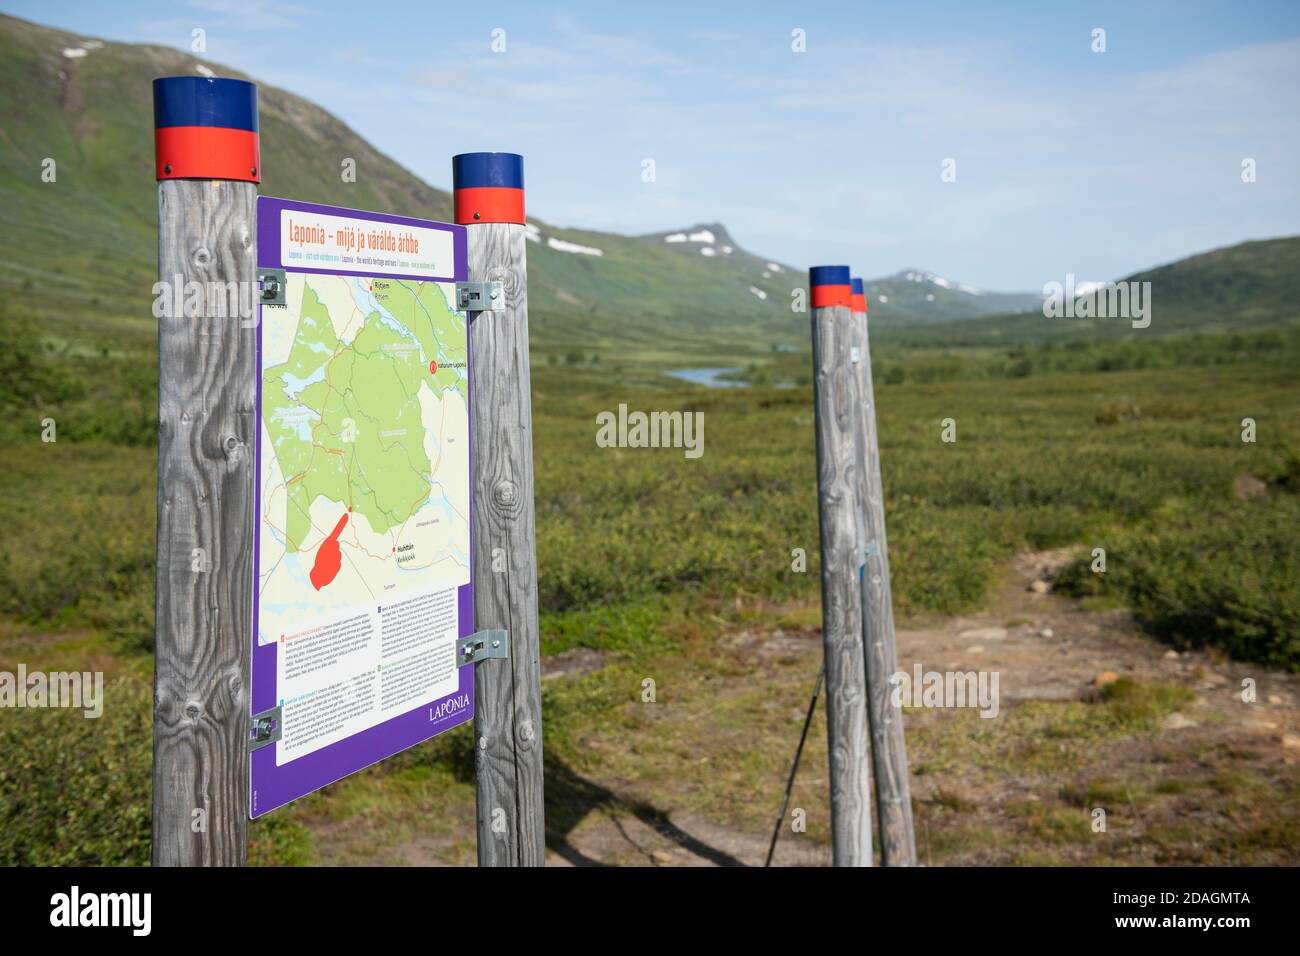 Information boards at south entrance of Padjelanta national park along Padjelantaleden Trail, Lapland, Sweden Stock Photo